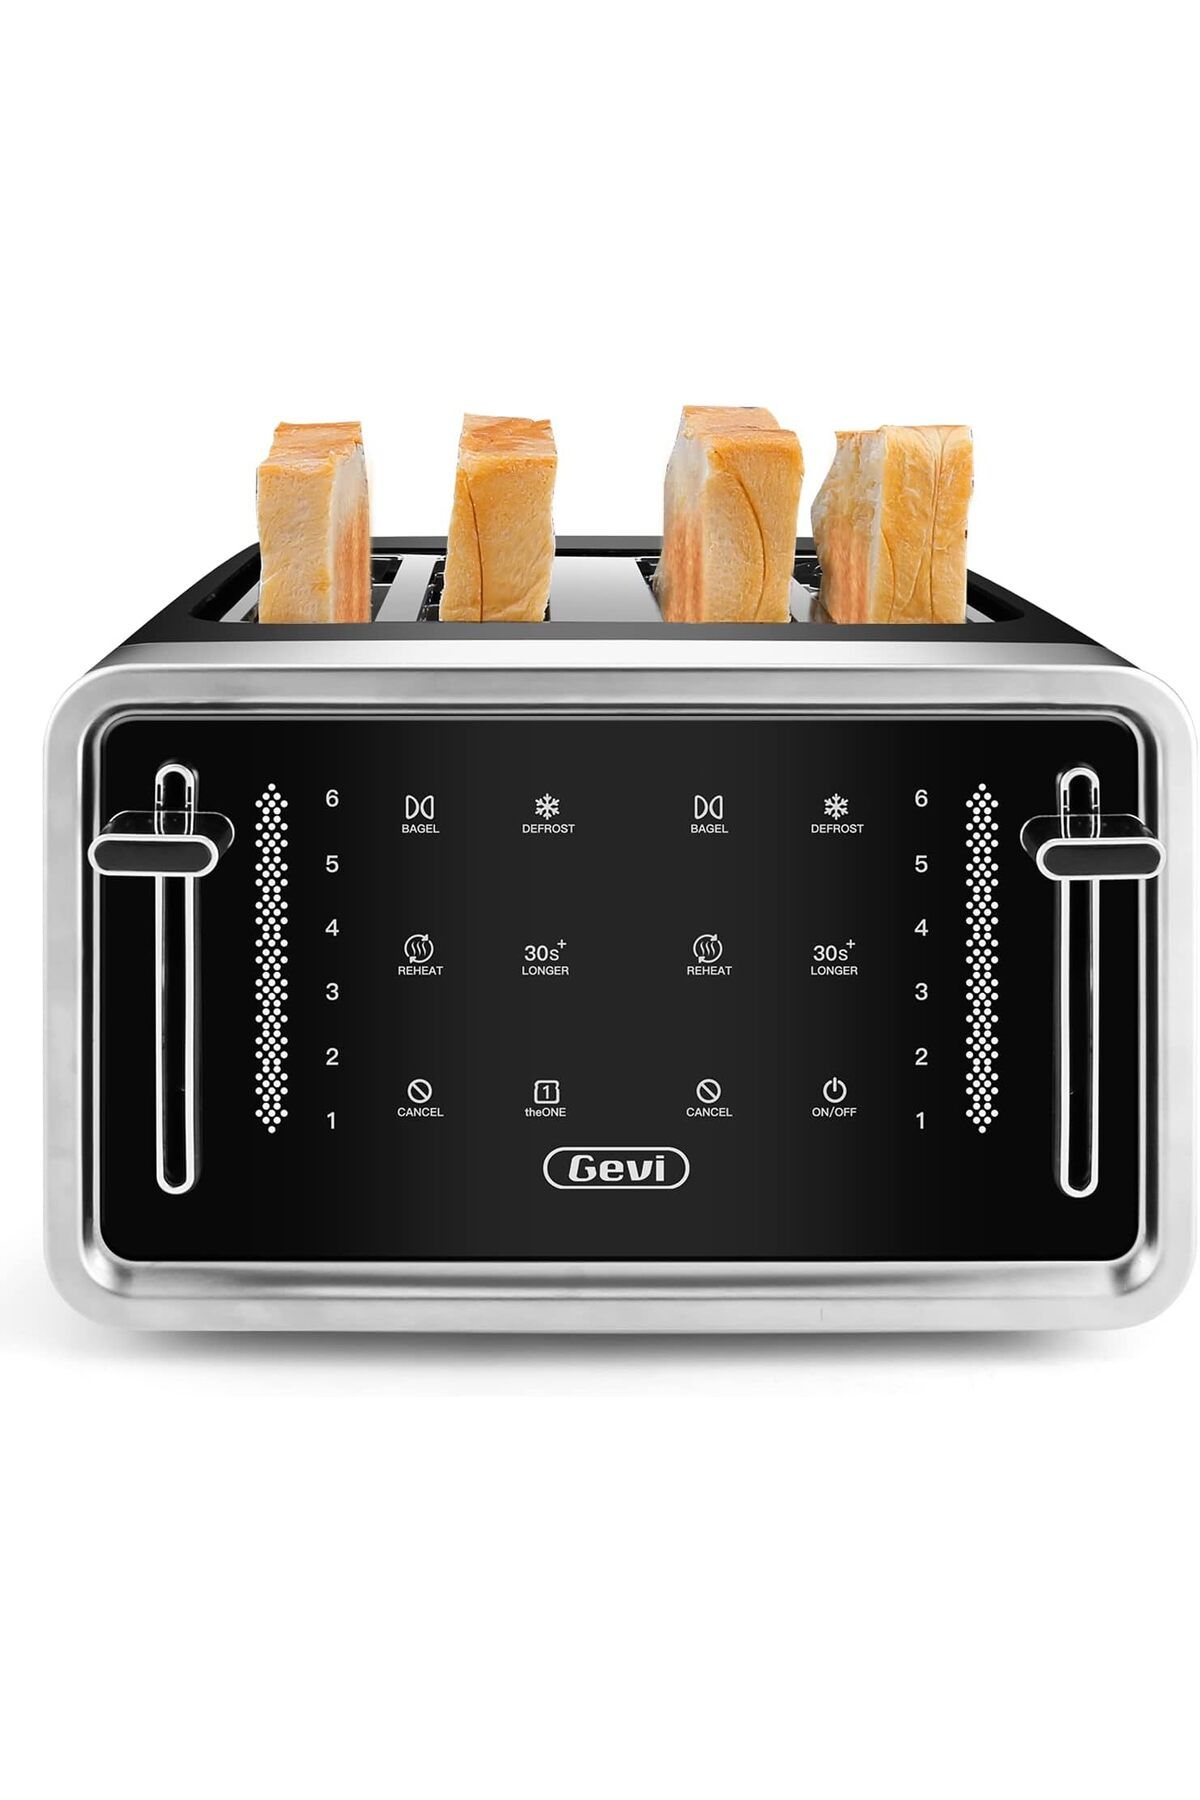 Gevi Ekmek Kızartma Makinesi 4 Dilim,Led Ekranlı Dokunmatik